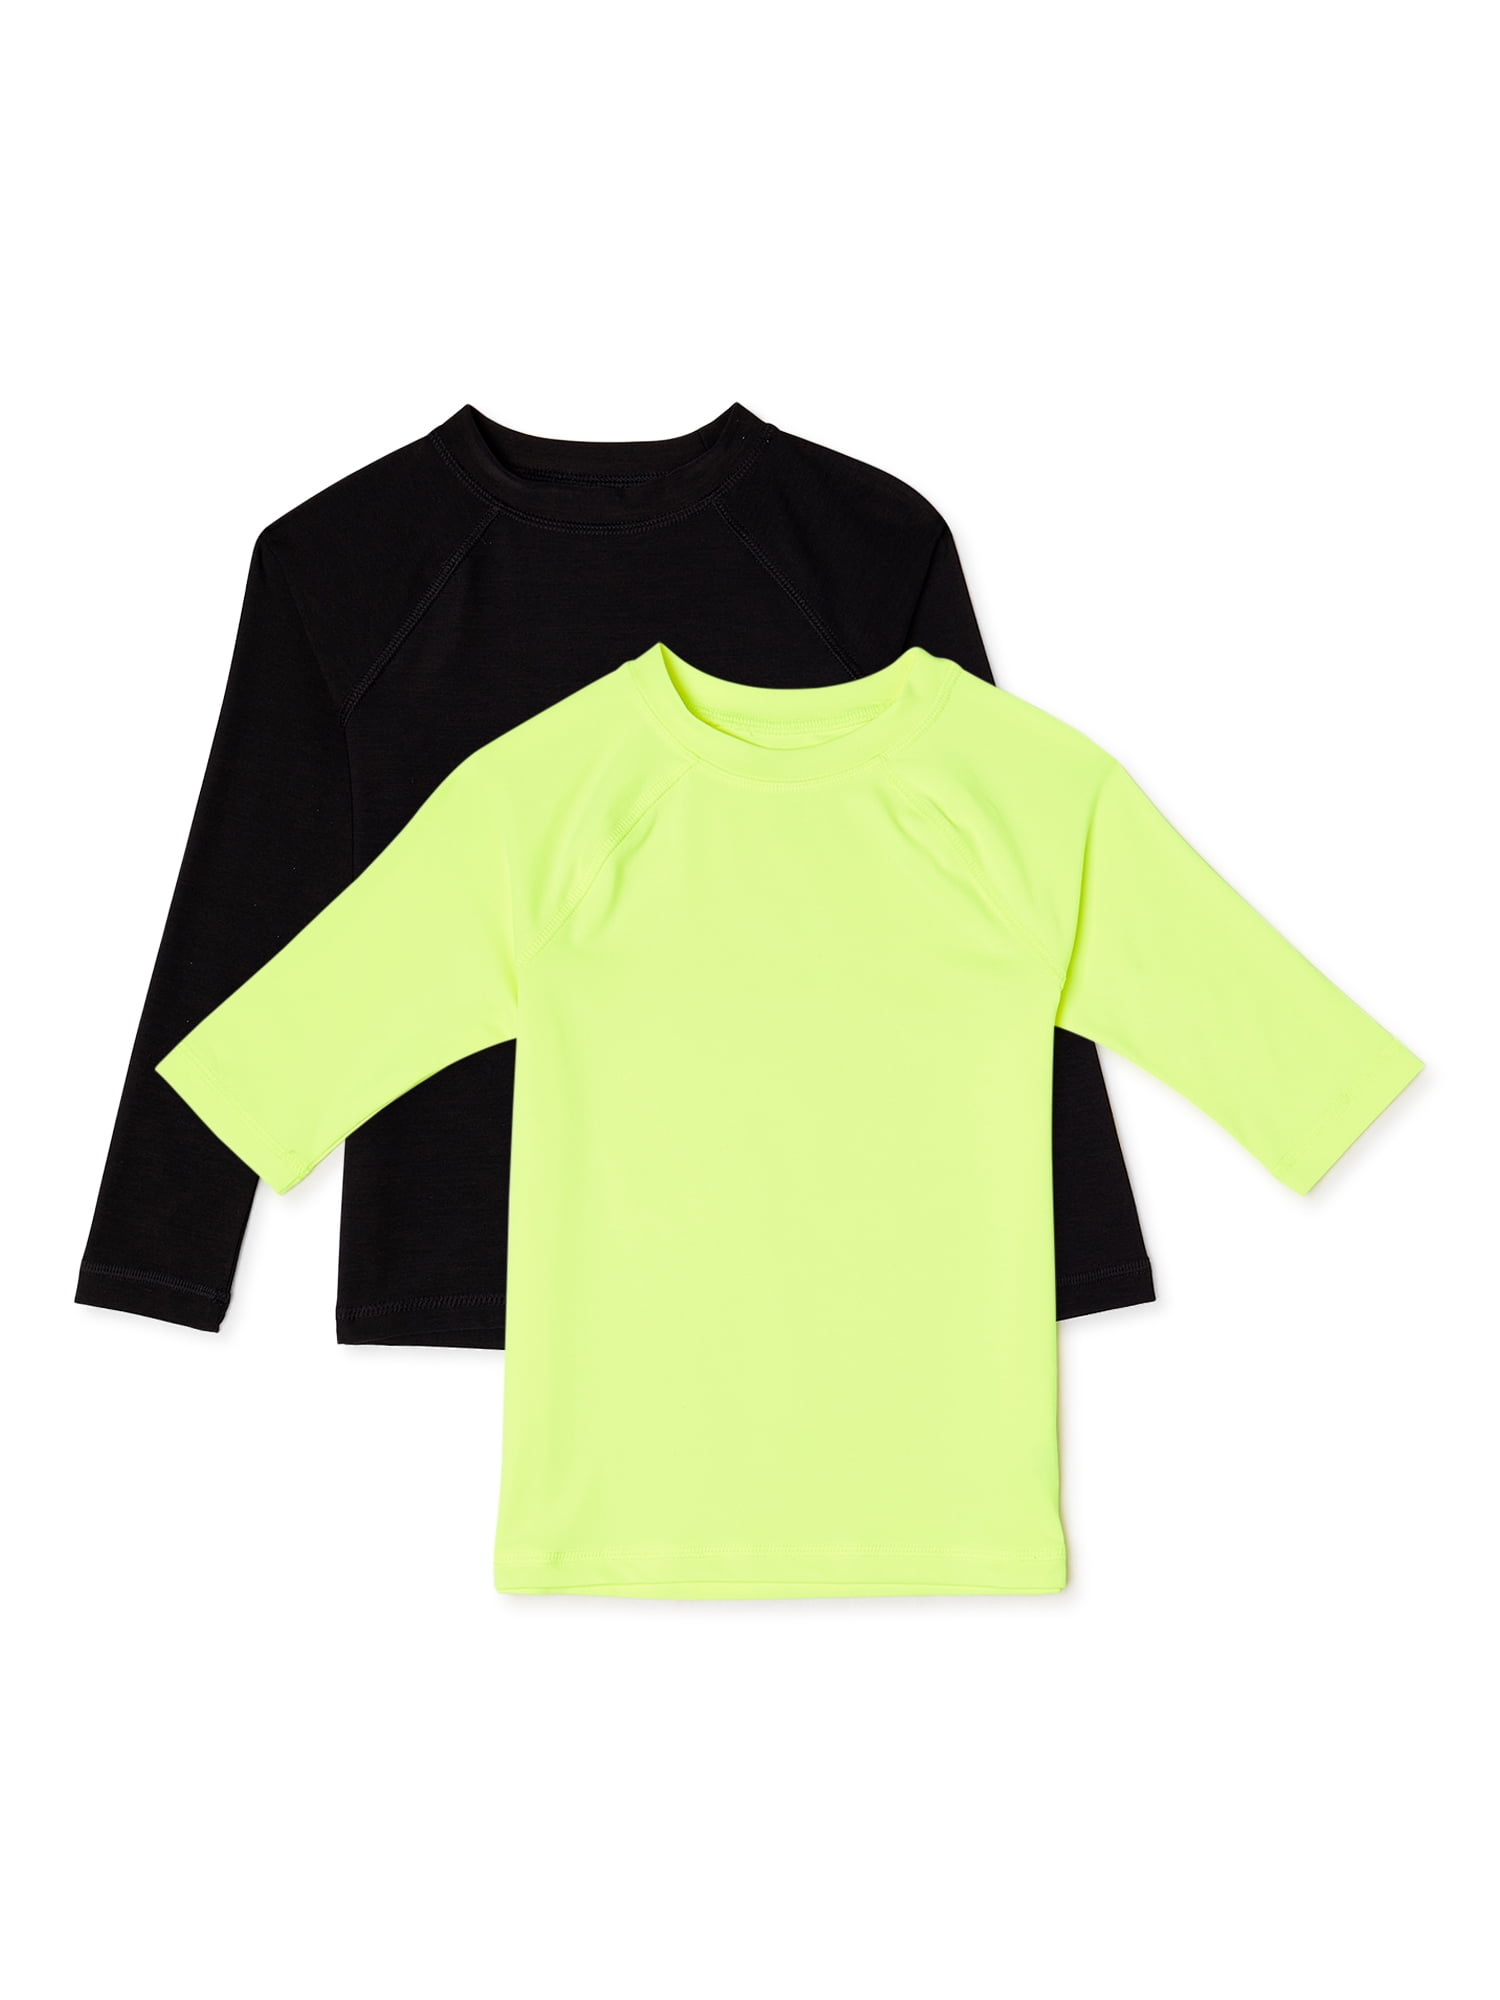 Sun Protection Rashguard Swim Shirt Lime/Black Jachs Boys UPF 50 Size 14/16